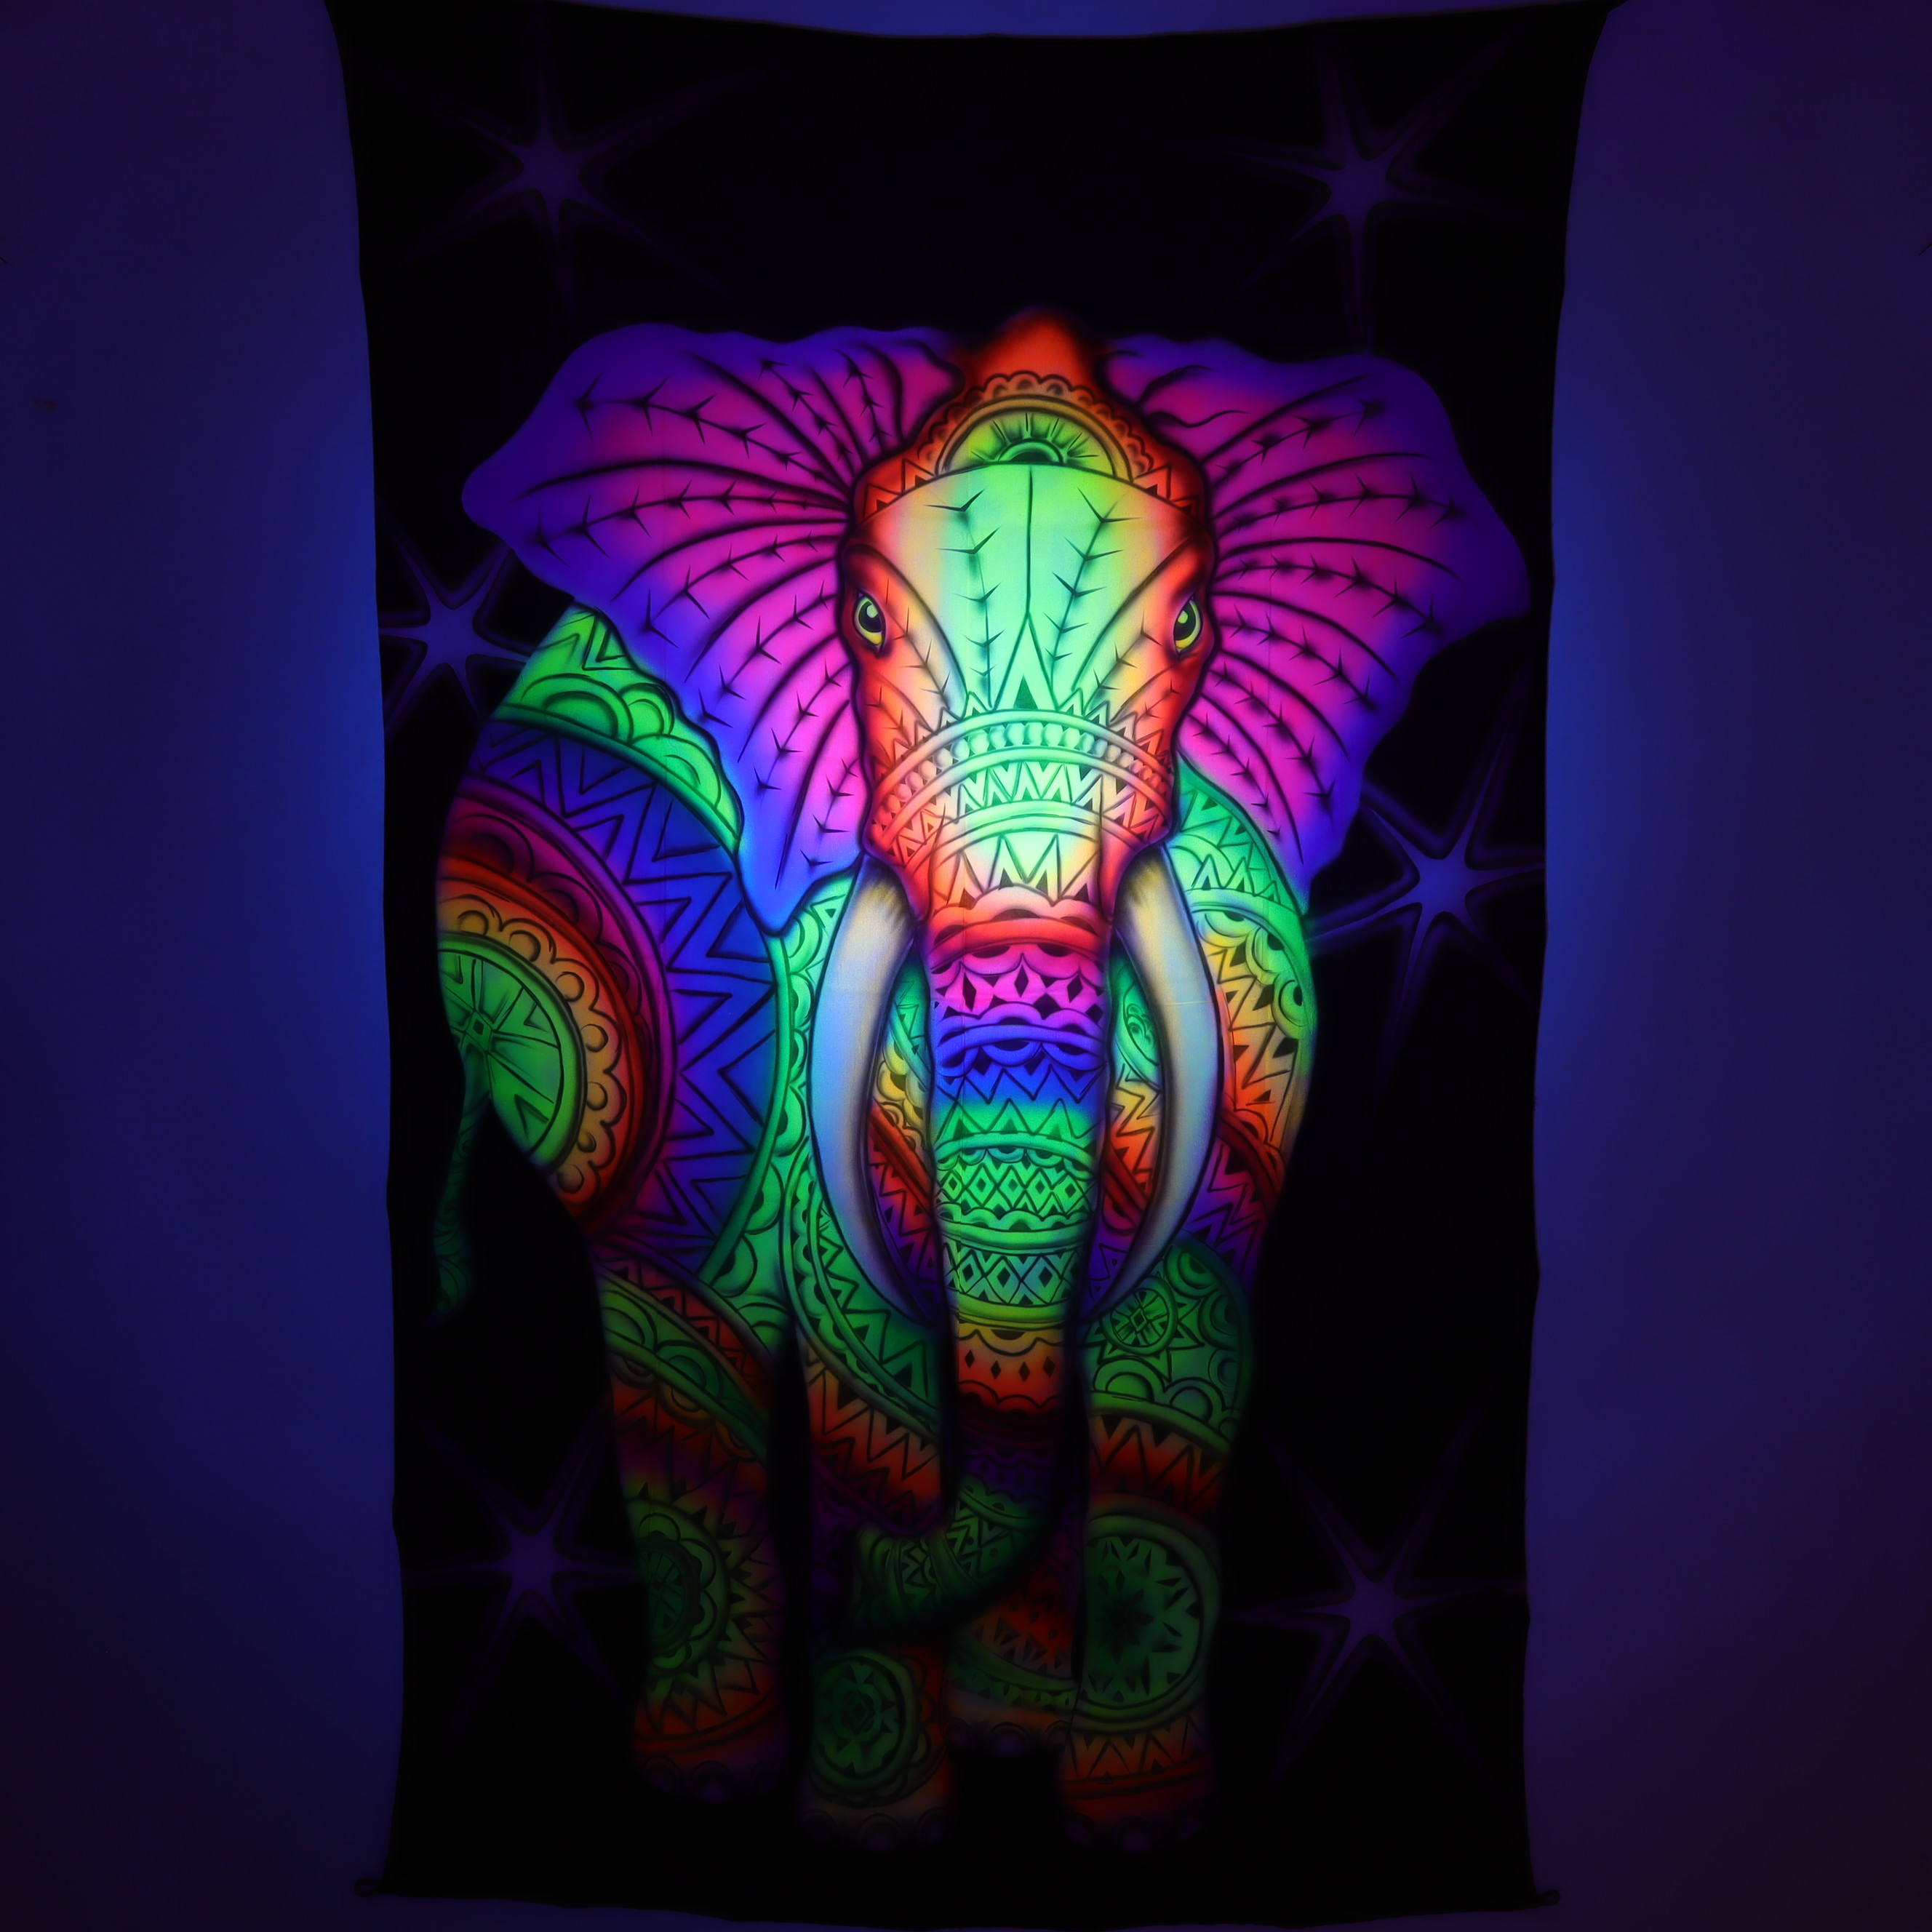 Wandtuch L 120x190 - Elefantastisch - Elefant mit Stoßzahn - aufwendig handgemaltes Schwarzlicht-Tuch - mehrfarbig & UV-aktiv